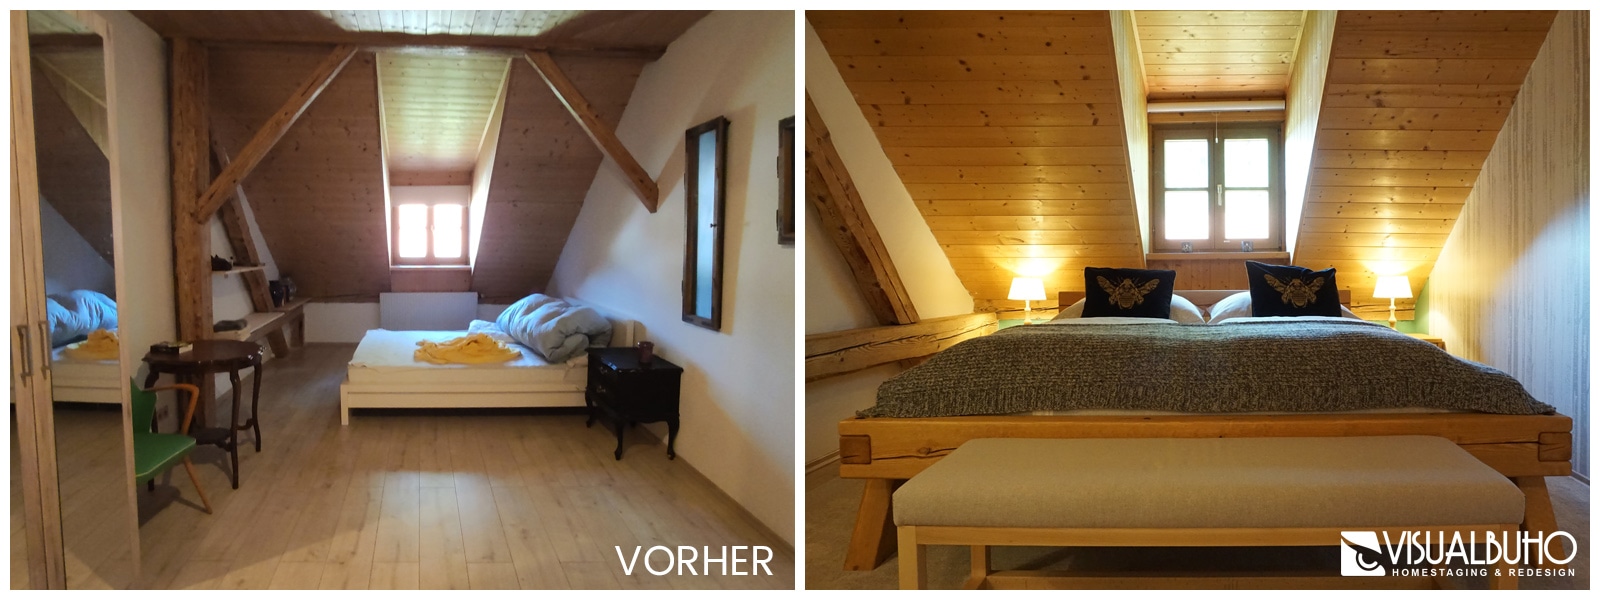 Schlafzimmer Ferienwohnung Vergleichsbild